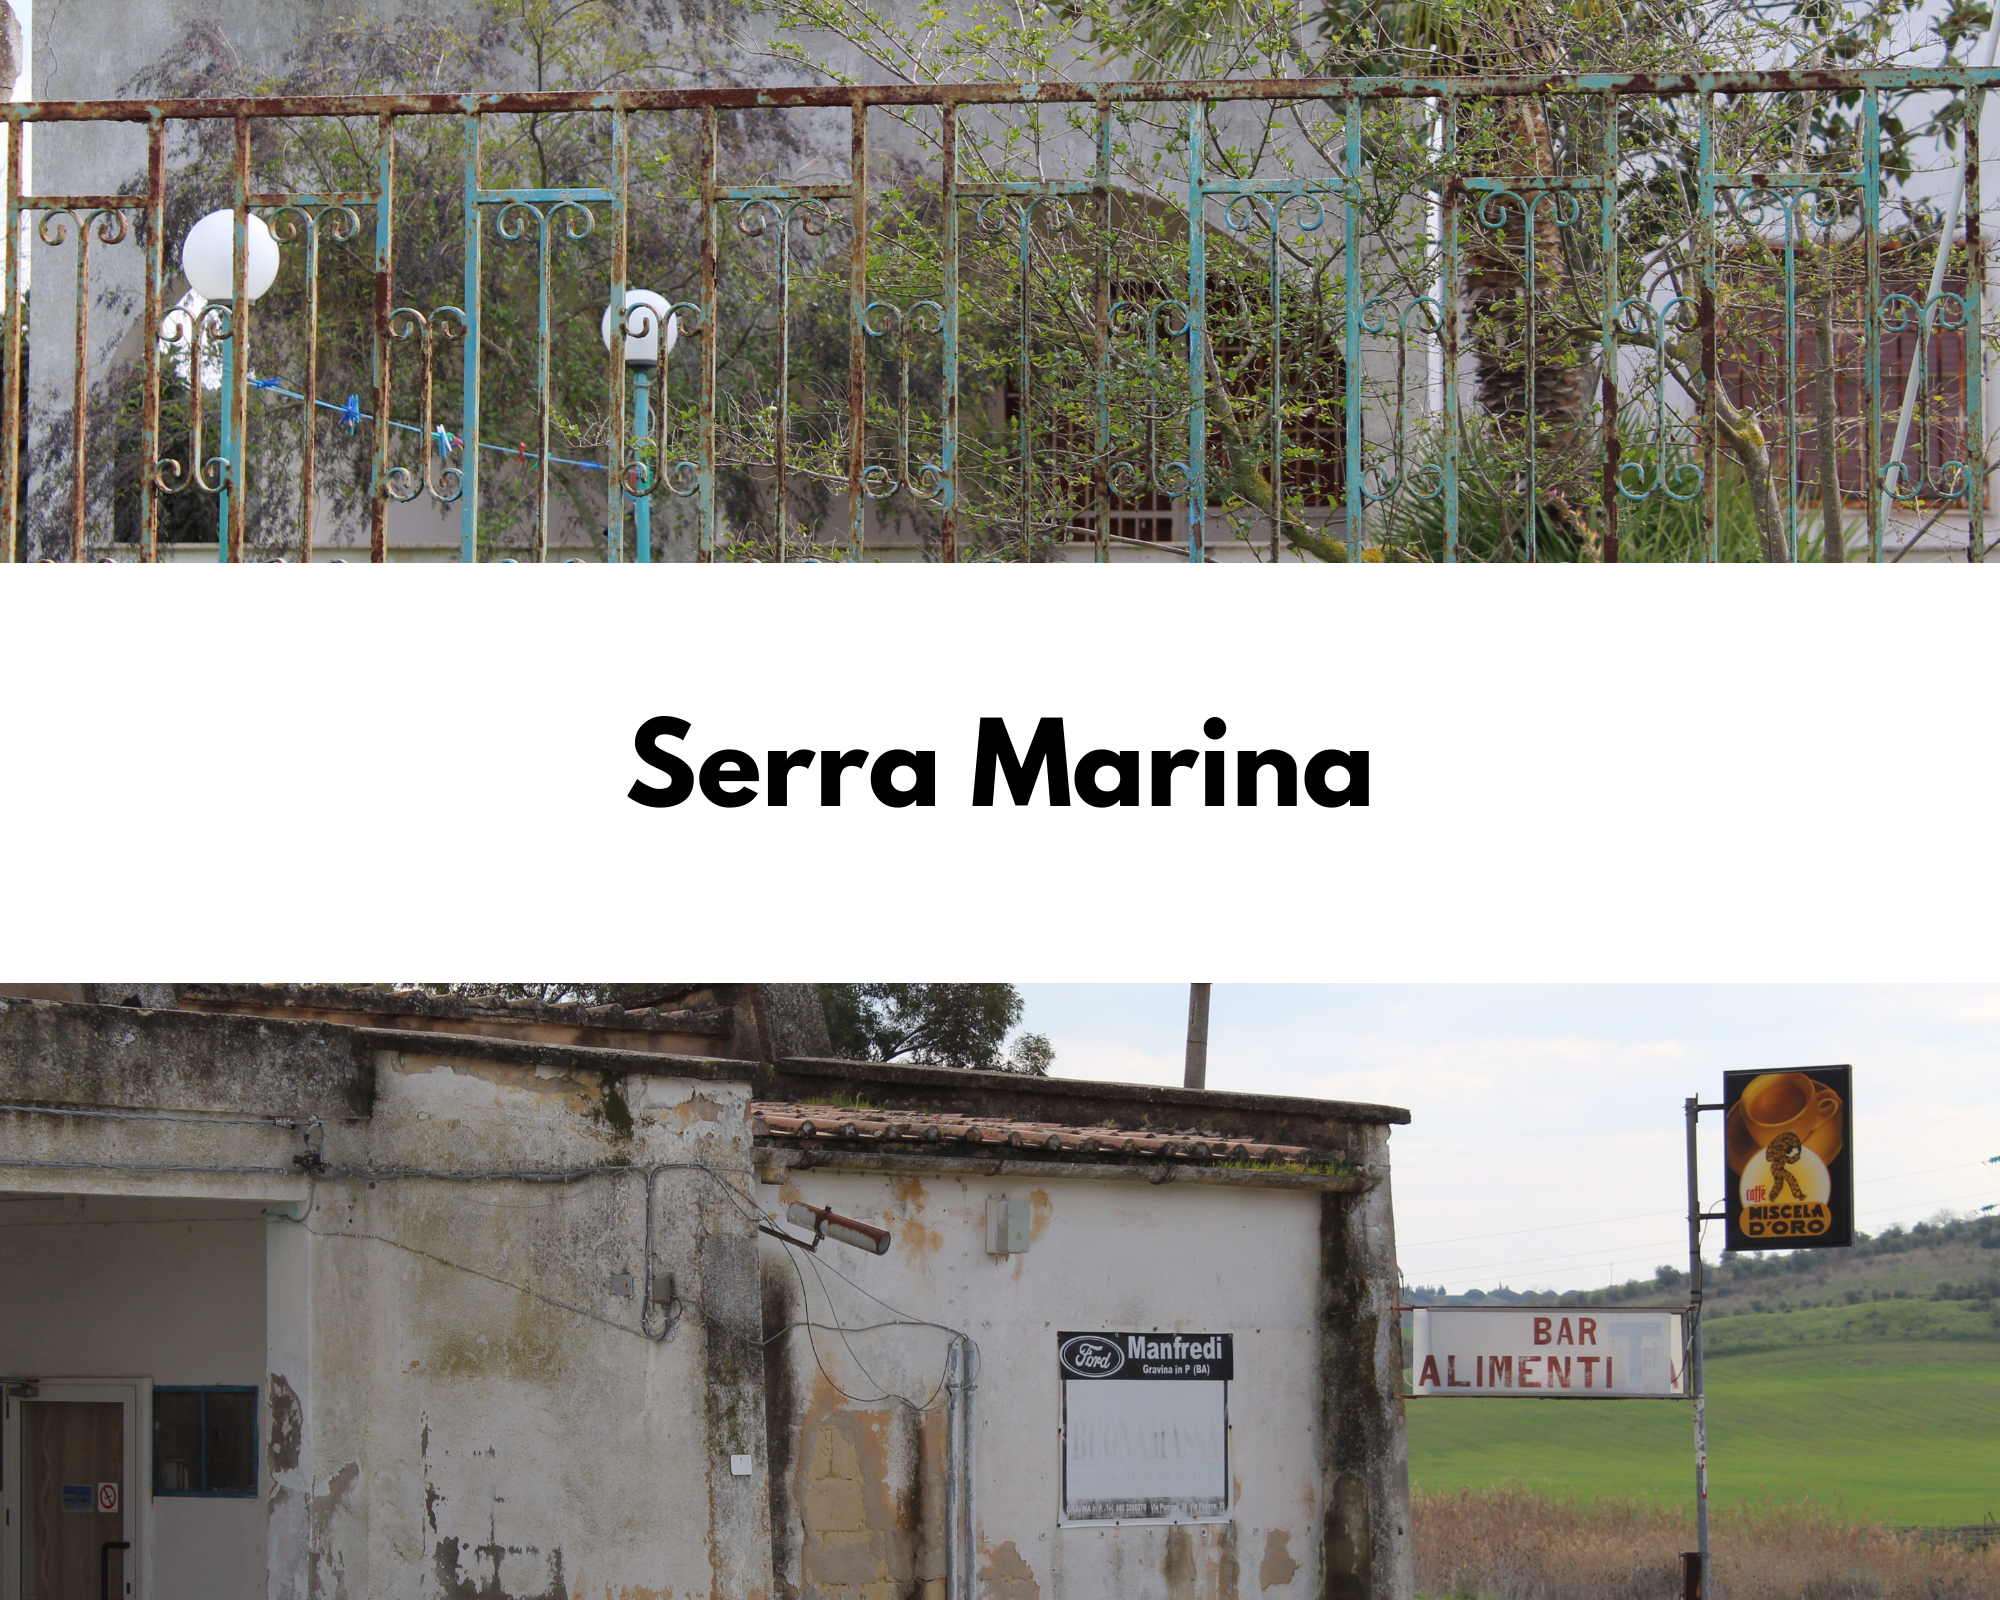 Borgo di Serra Marina: una cancellata in ferro arrugginita con dello smalto verdeacqua davanti una villa con arco d'ingresso e lampioncini a palla sul vialetto